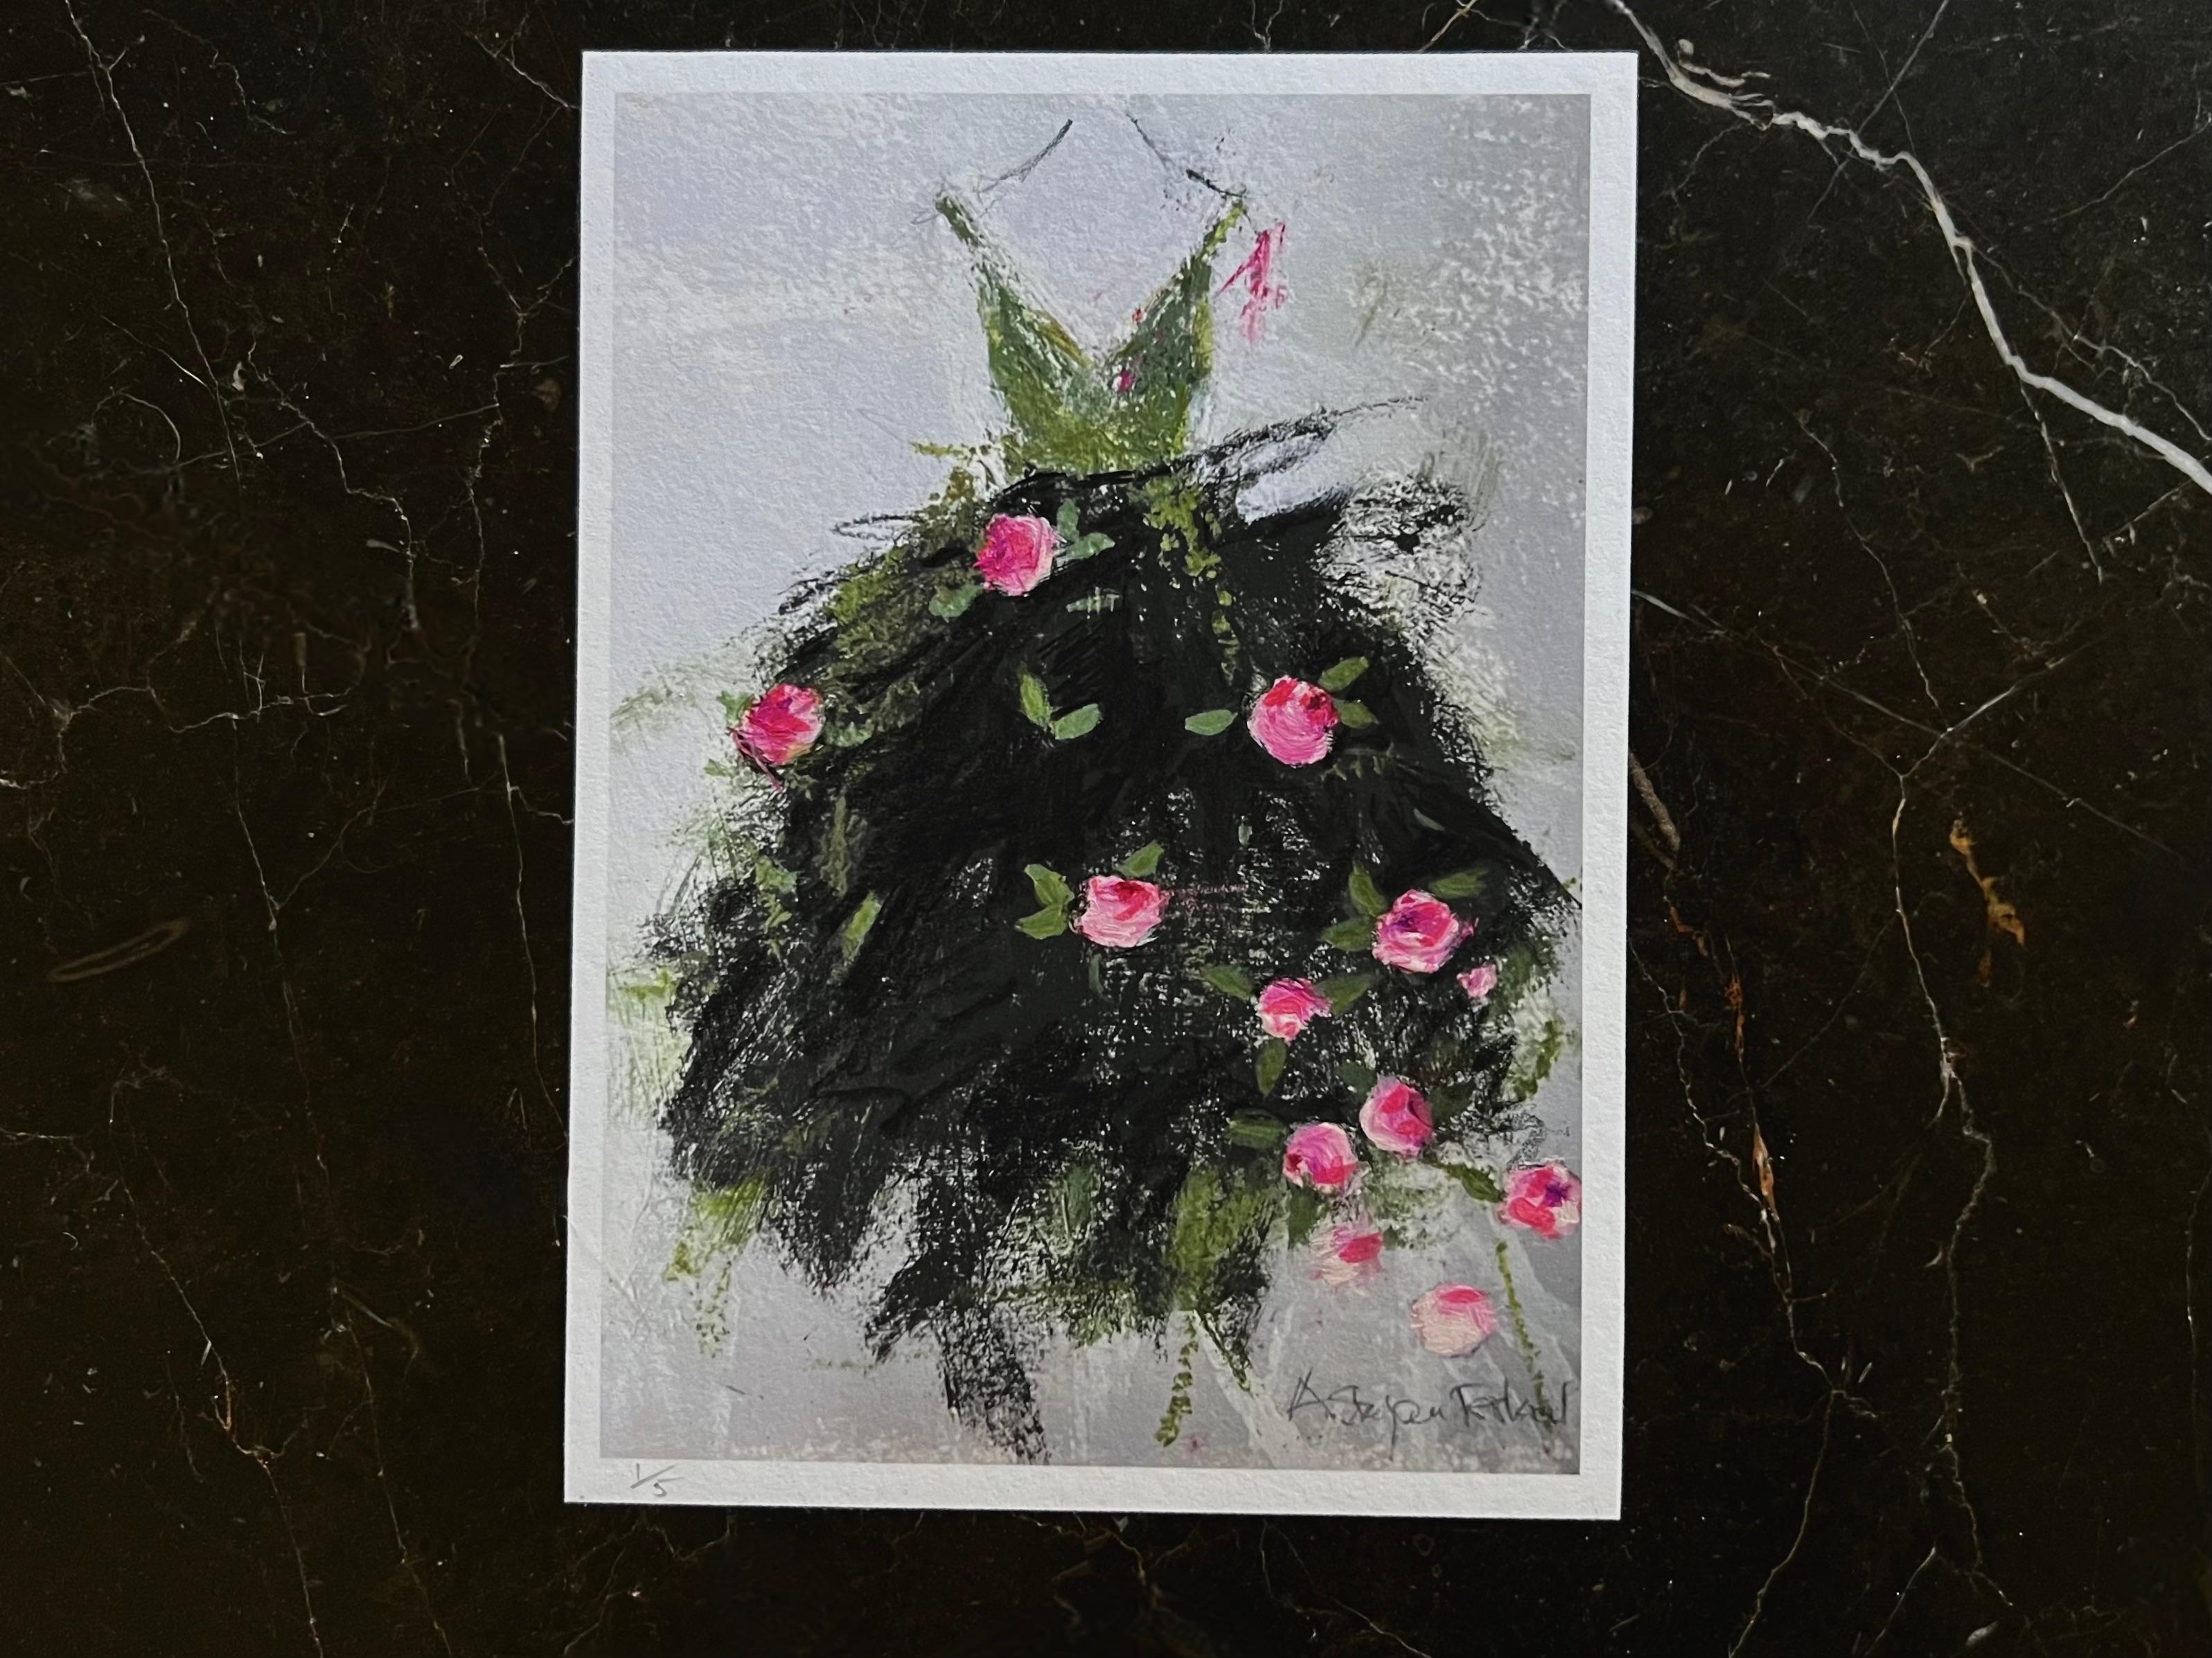 The Garden Party - 5 "x7", impression giclée avec éléments peints à la main, vert, rose, noir